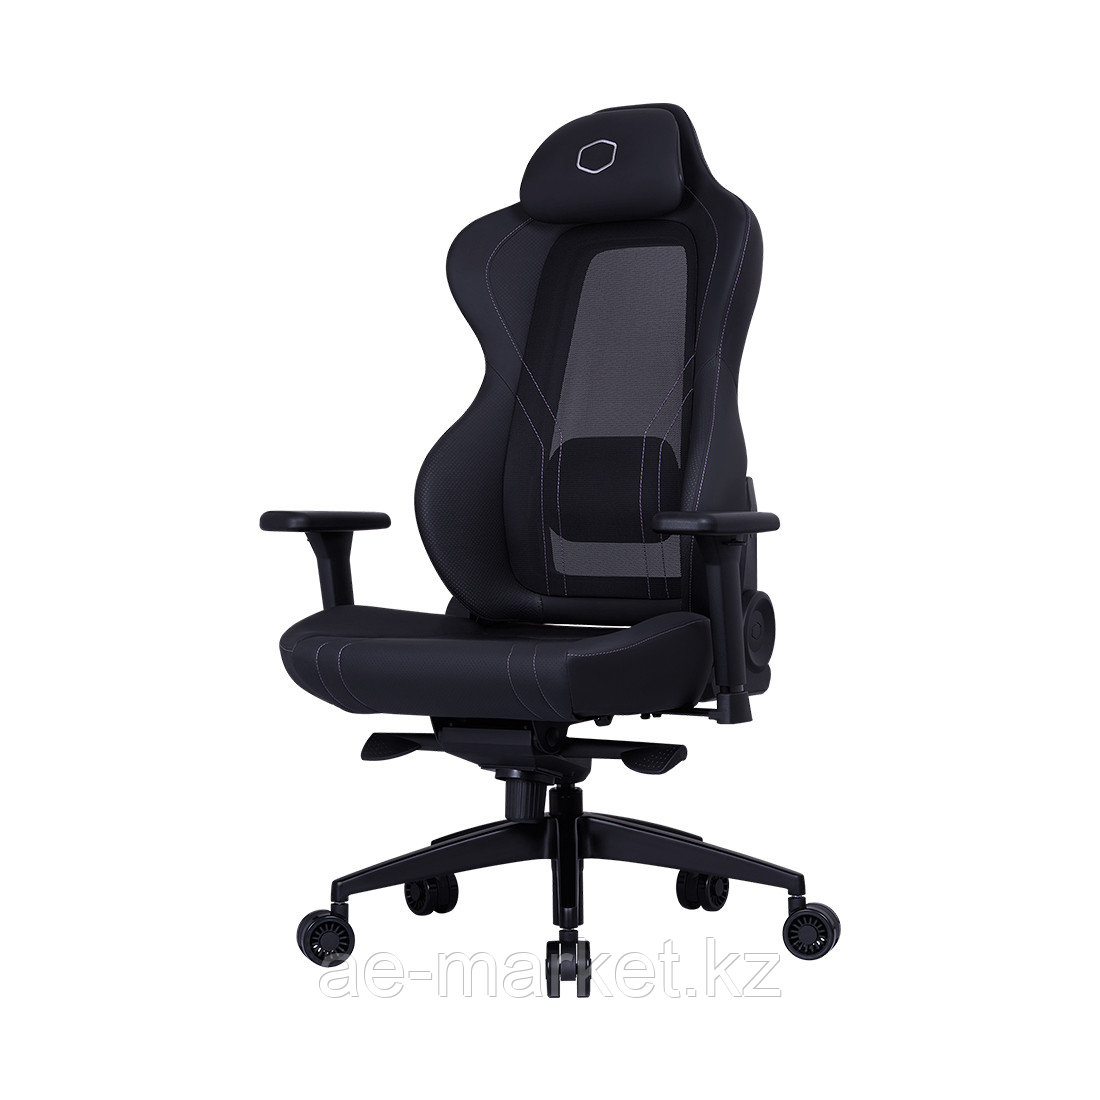 Игровое компьютерное кресло Cooler Master Hybrid 1 Gaming Chair Black, фото 1